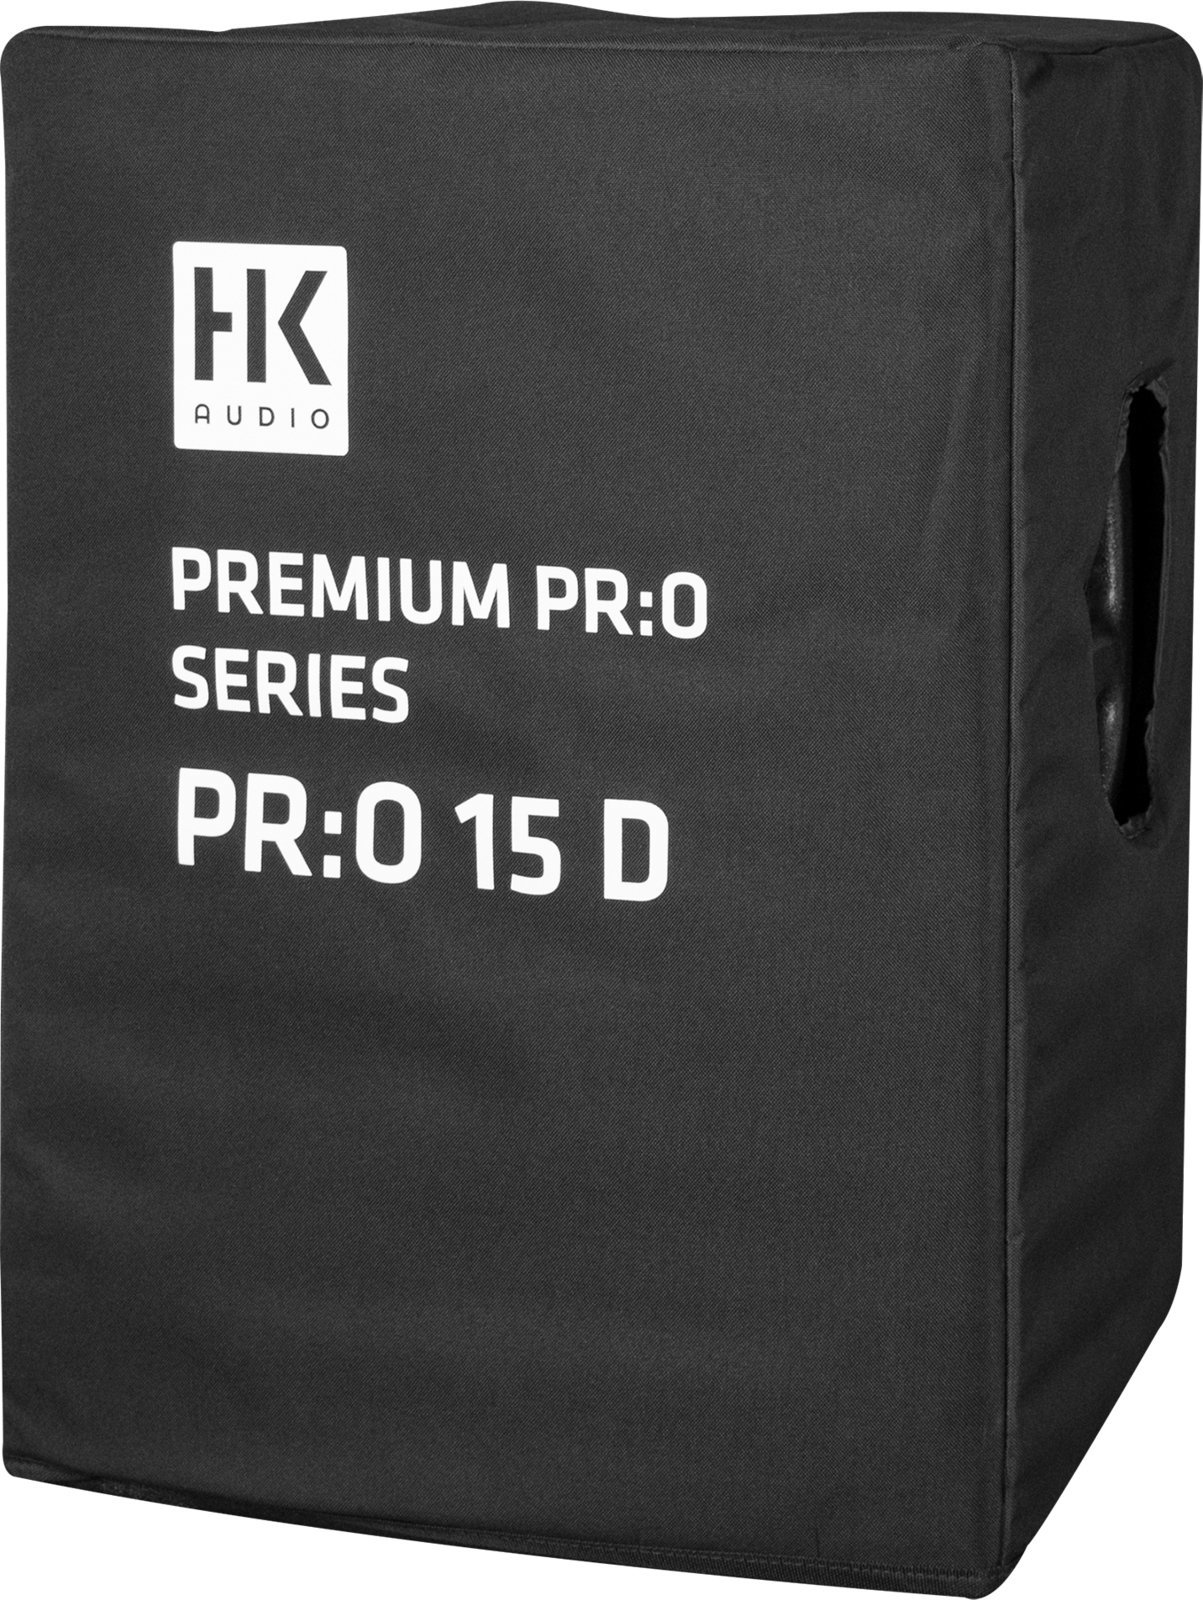 Bag for loudspeakers HK Audio PR:O 15 D CVR Bag for loudspeakers